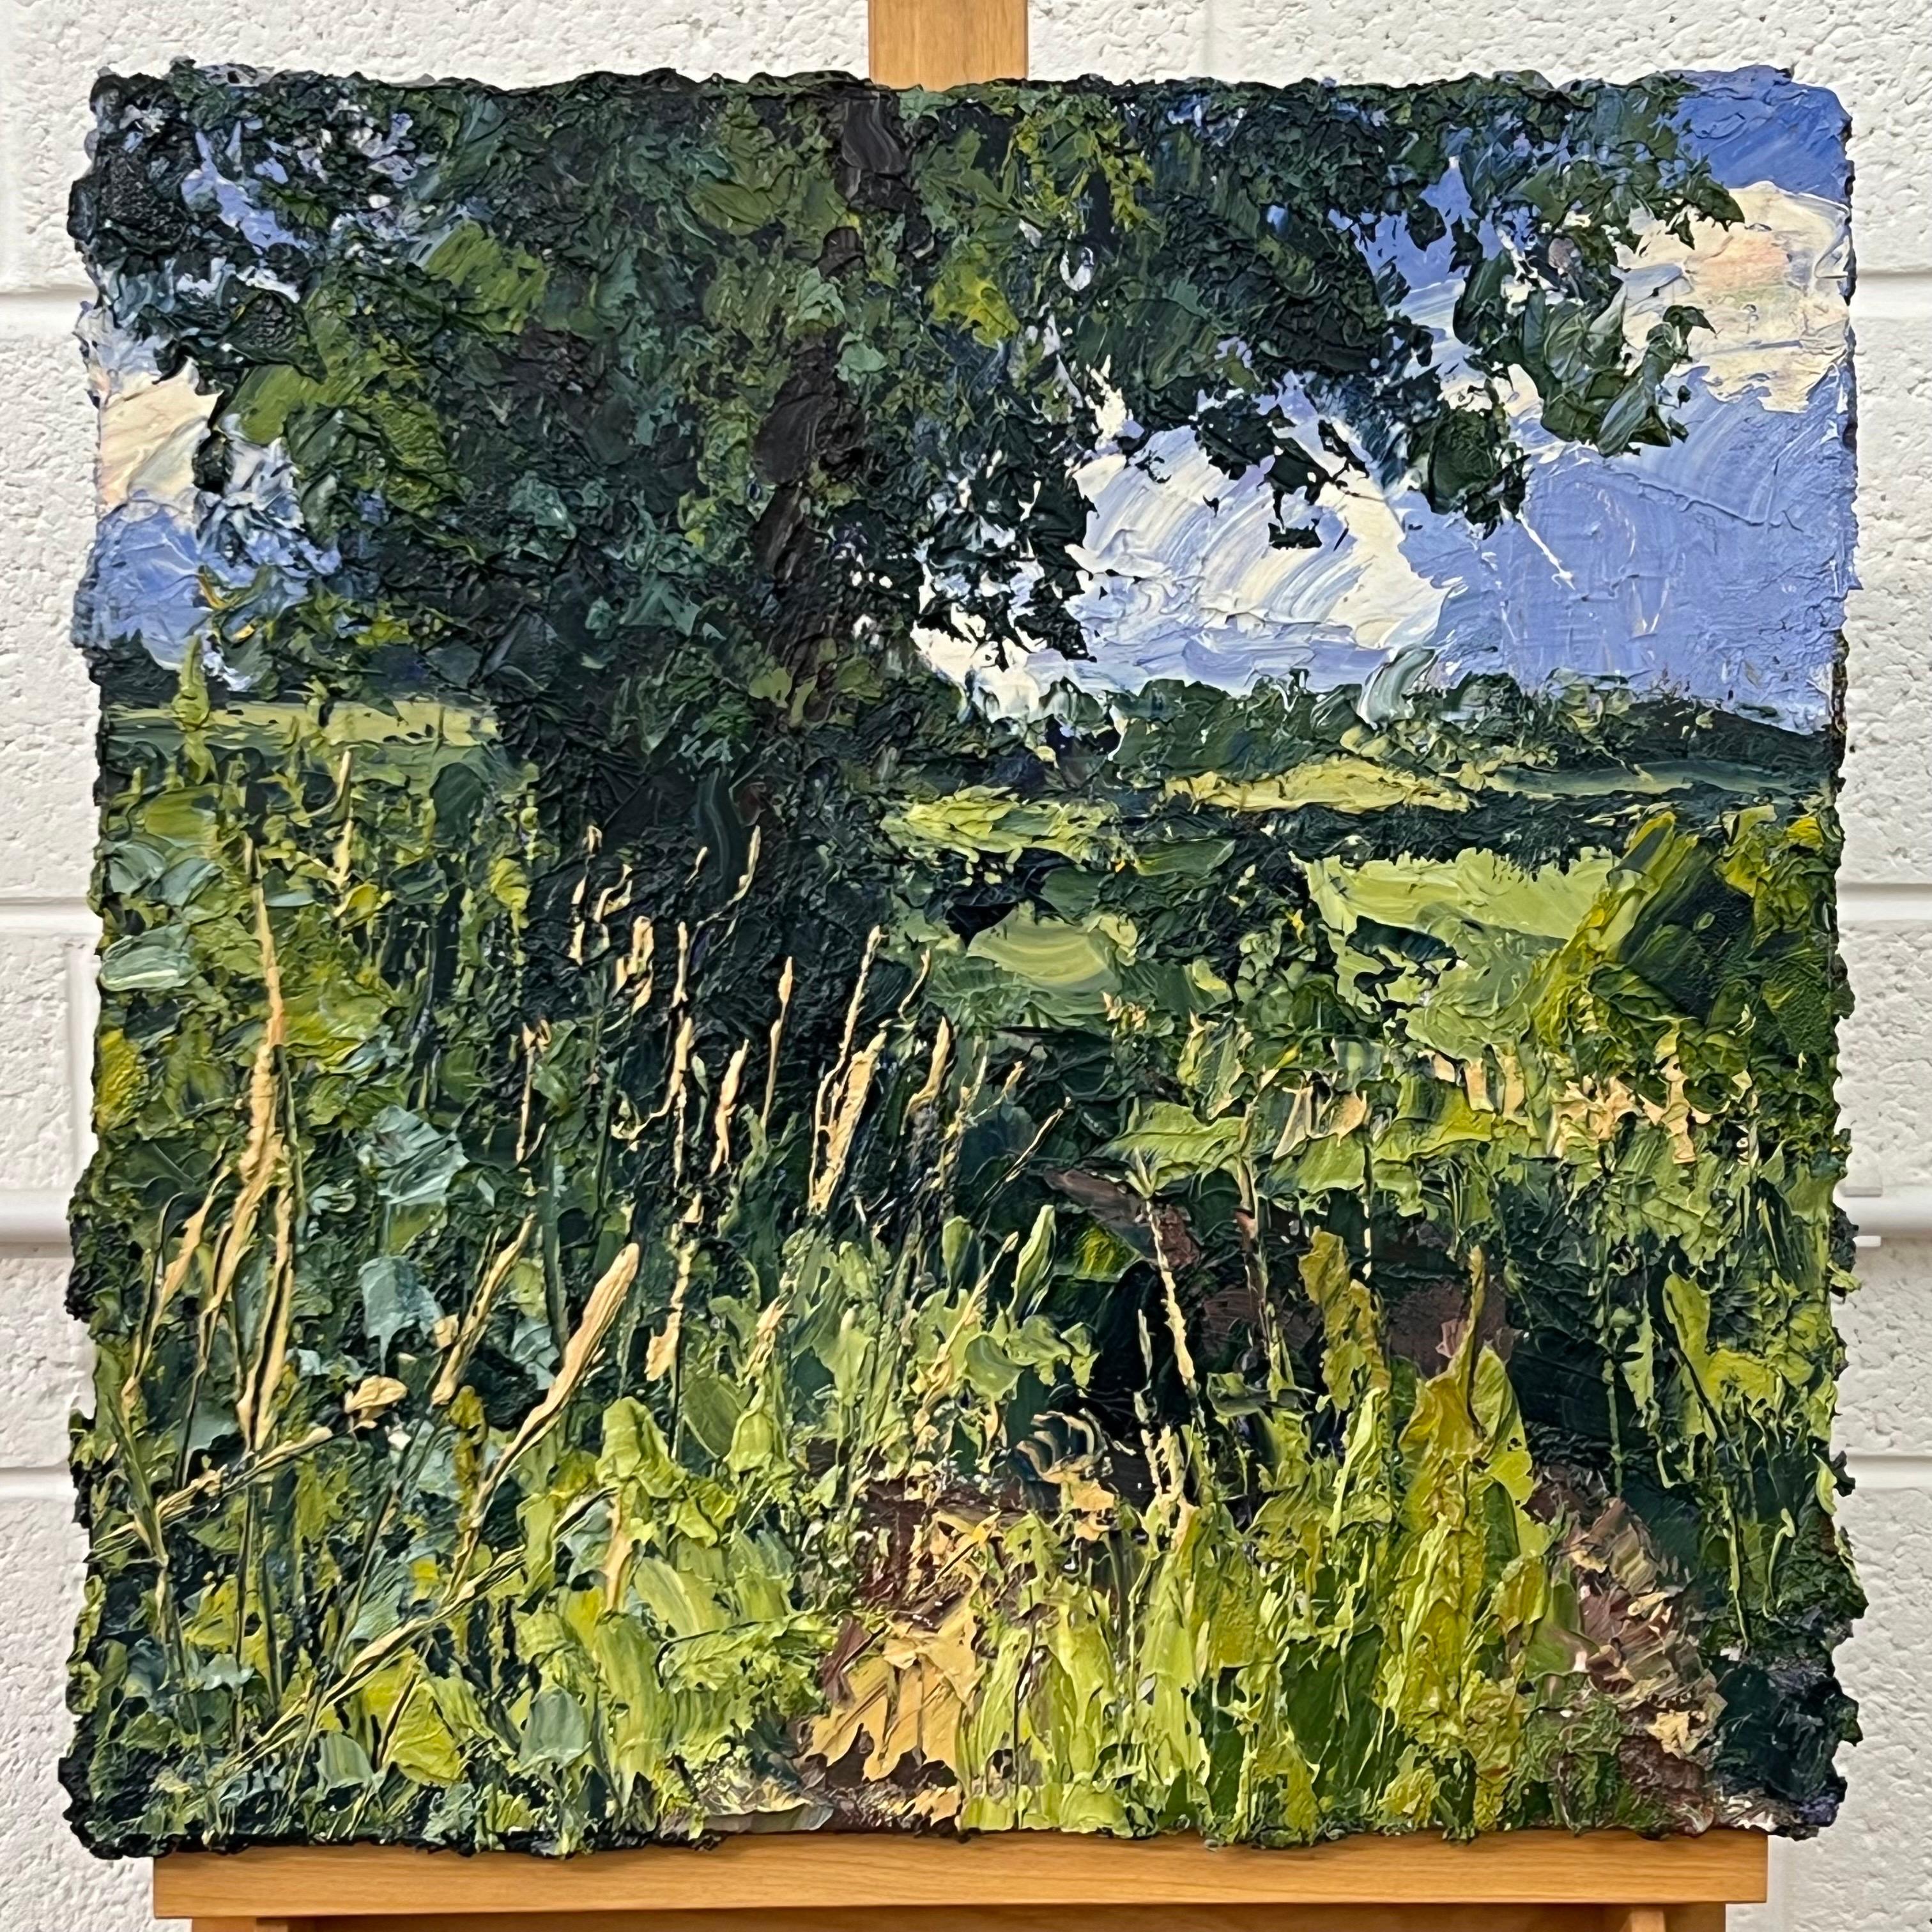 Englisches Sommer-Impasto-Ölgemälde des britischen Landschaftsmalers Colin Halliday. Dieses impressionistische und ausdrucksstarke Gemälde zeigt einen schönen Frühlingstag in England, mit wilden Blumen und langem Gras im Vordergrund. Gemalt en plein